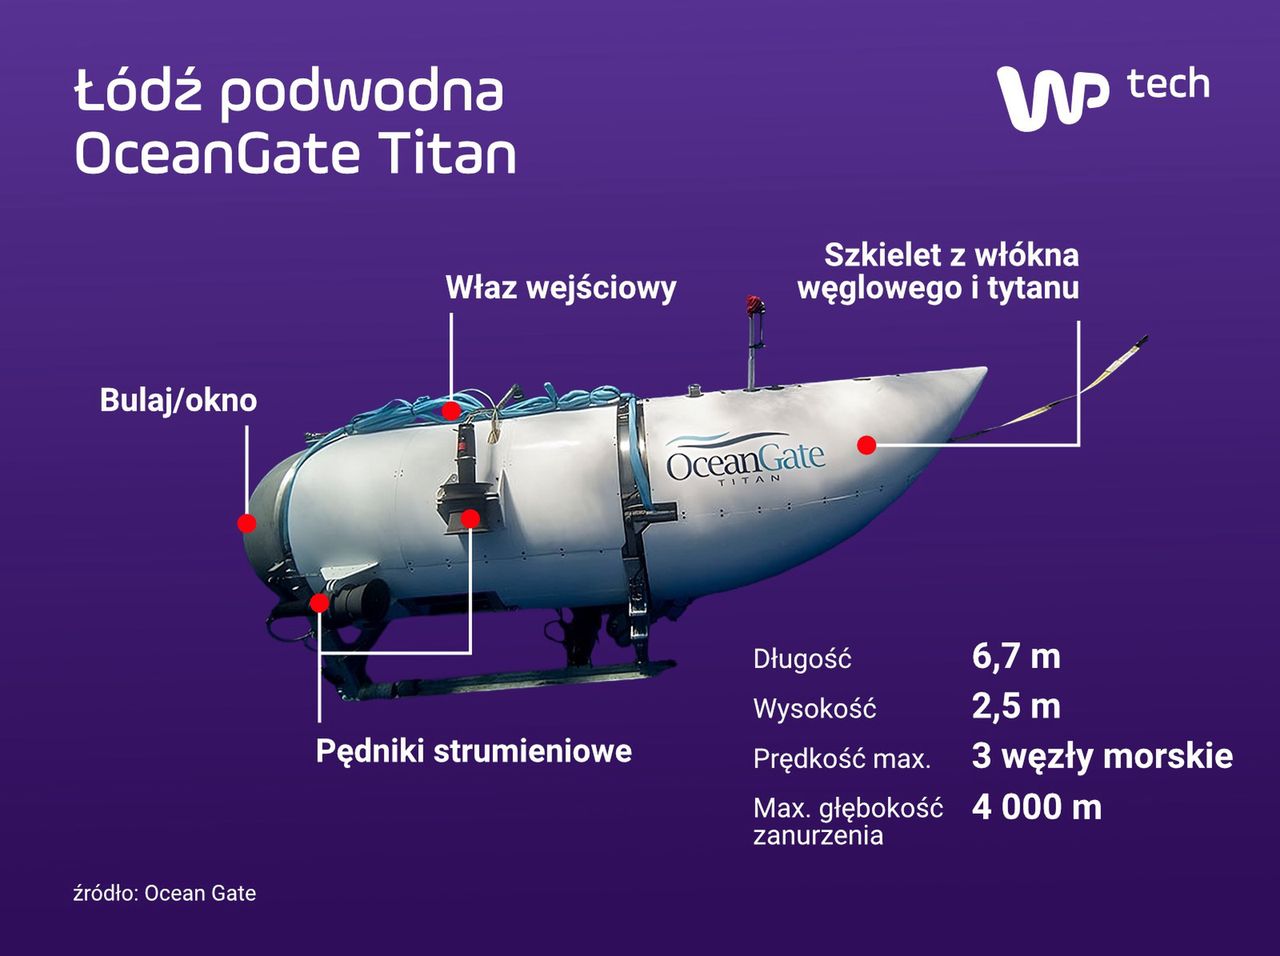 Łódź podwodna OceanGate Titan (kliknij grafikę, aby powiększyć)